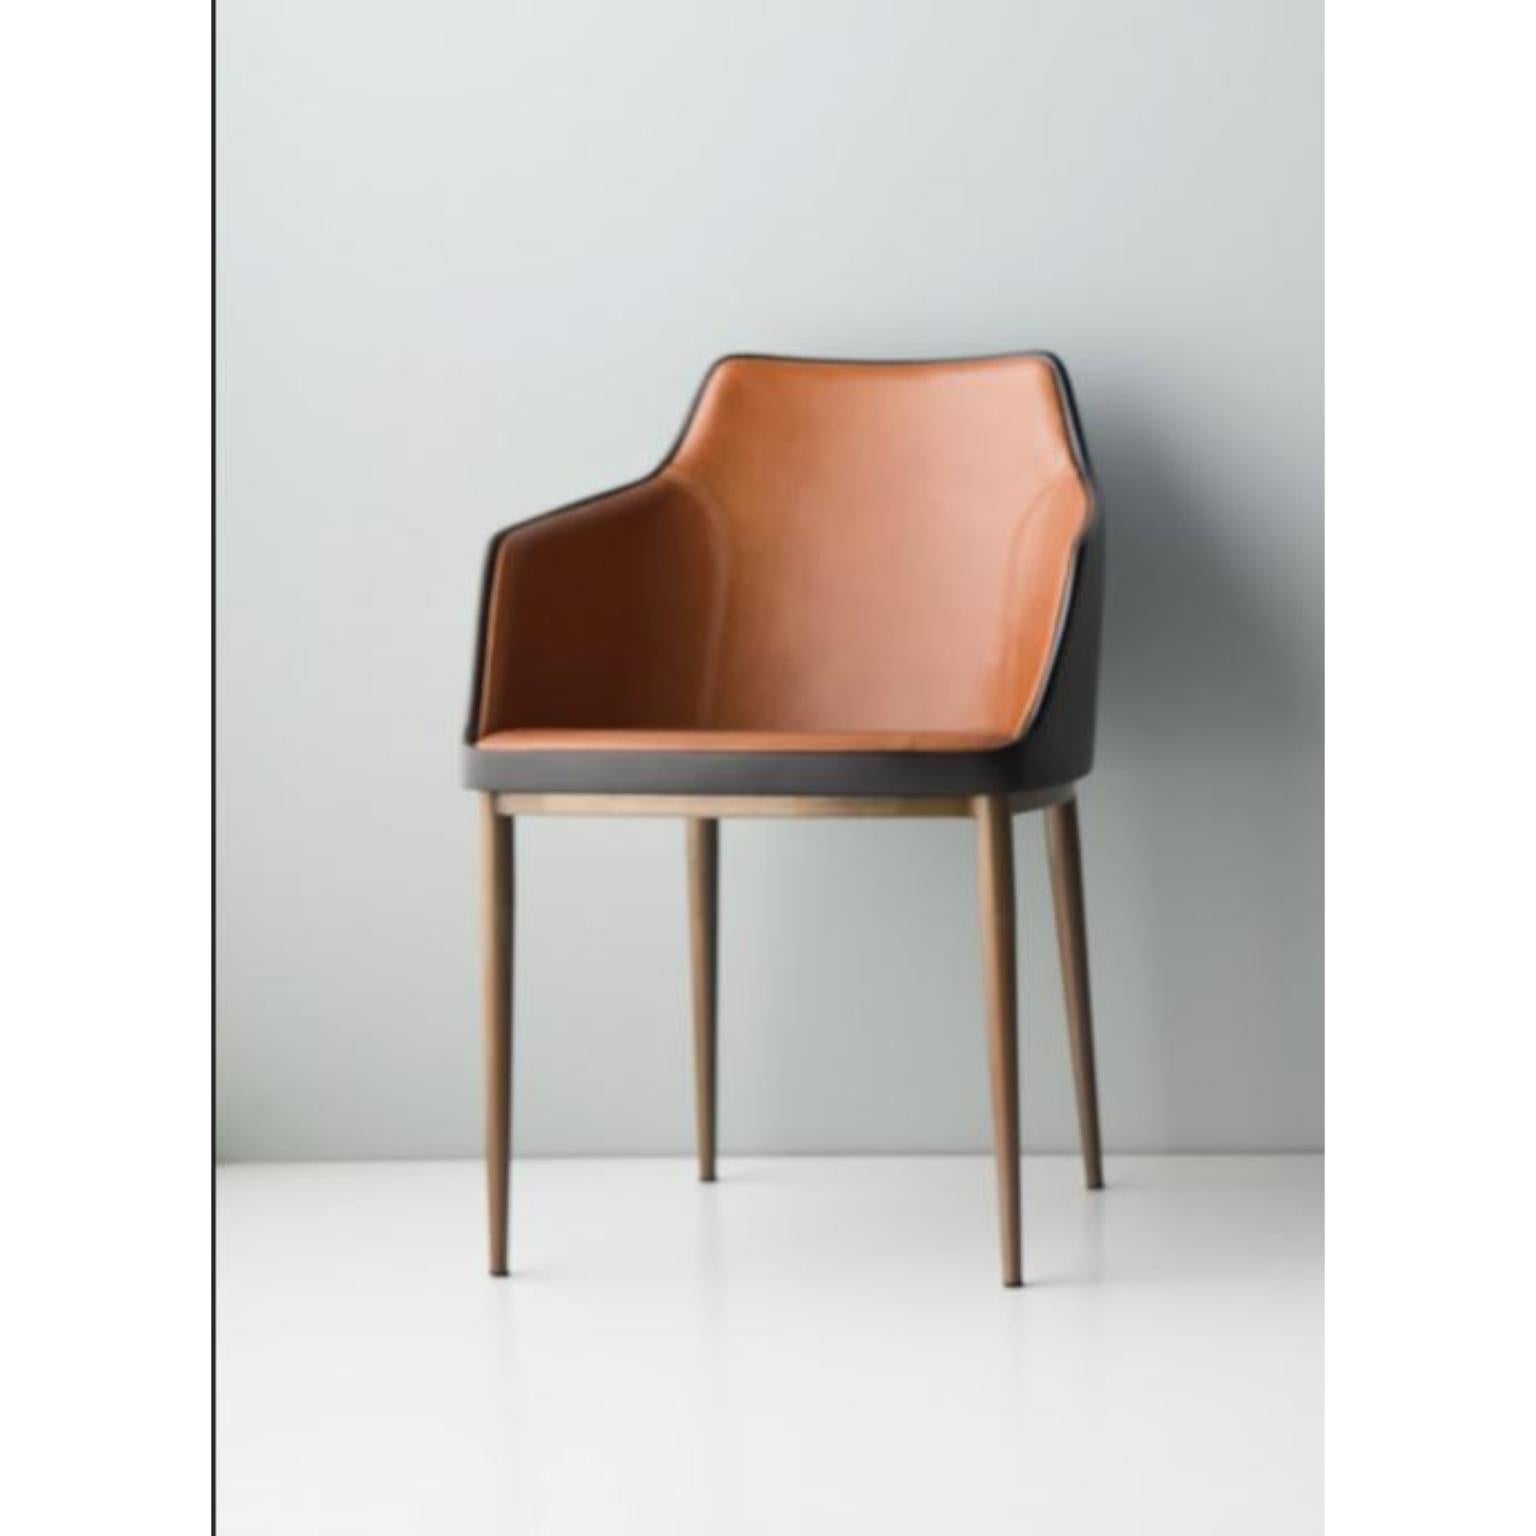 Bloo-Stuhl mit Armlehnen von Doimo Brasil
Abmessungen: B 50 x T 53 x H 79 cm 
MATERIALIEN: Stuhl aus Metall und Fiberglas mit gepolstertem Sitz.


Mit der Absicht, guten Geschmack und Persönlichkeit zu vermitteln, entschlüsselt Doimo Trends und